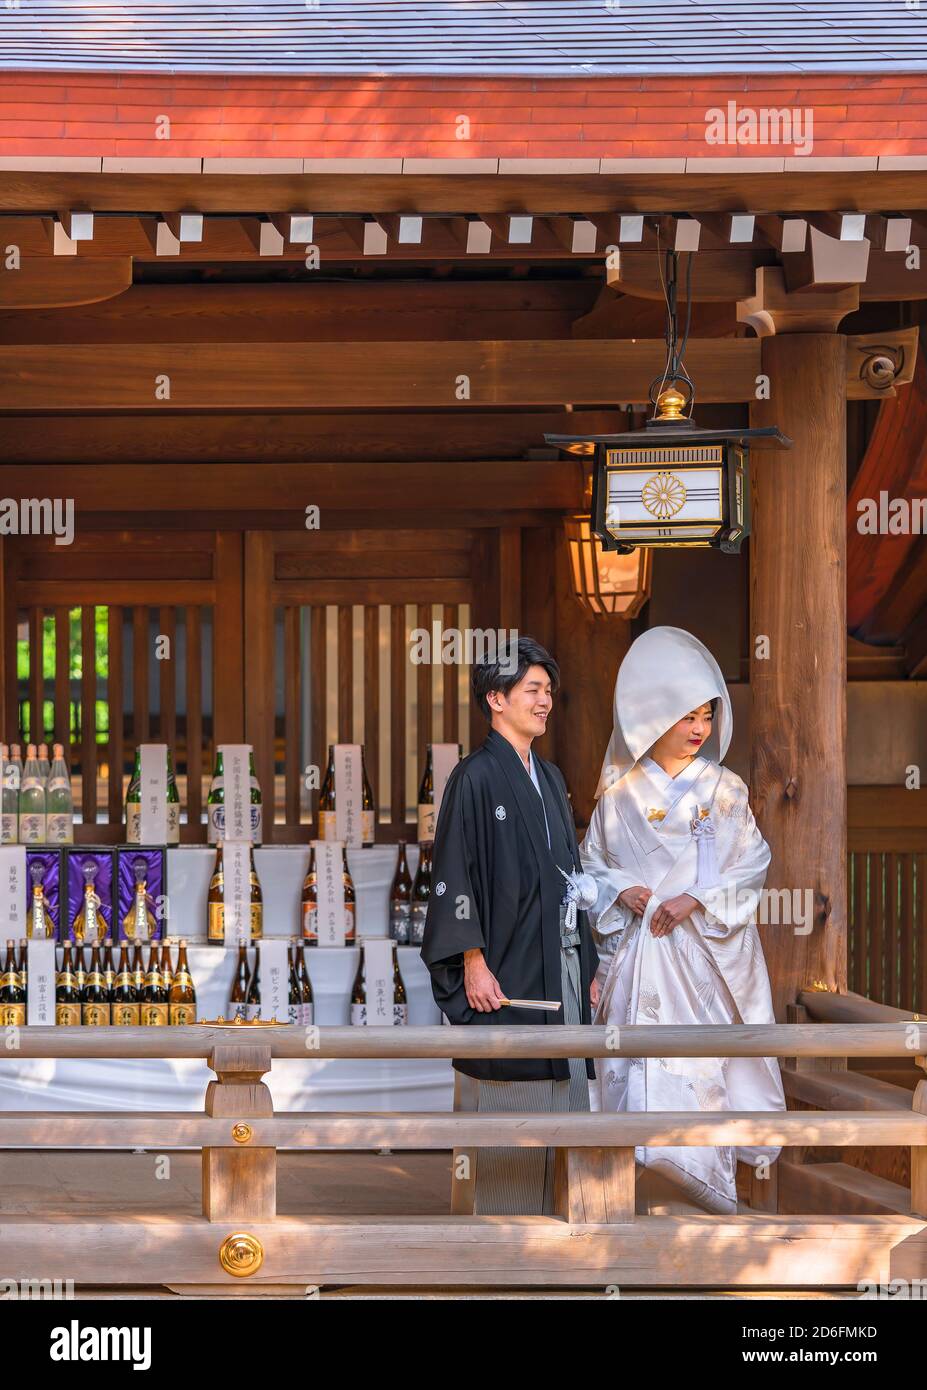 tokyo, japon - octobre 10 2020: Mariage traditionnel japonais shinto d'un couple en kimono noir haori et shiromuku blanc sous une lanterne ornée de t Banque D'Images